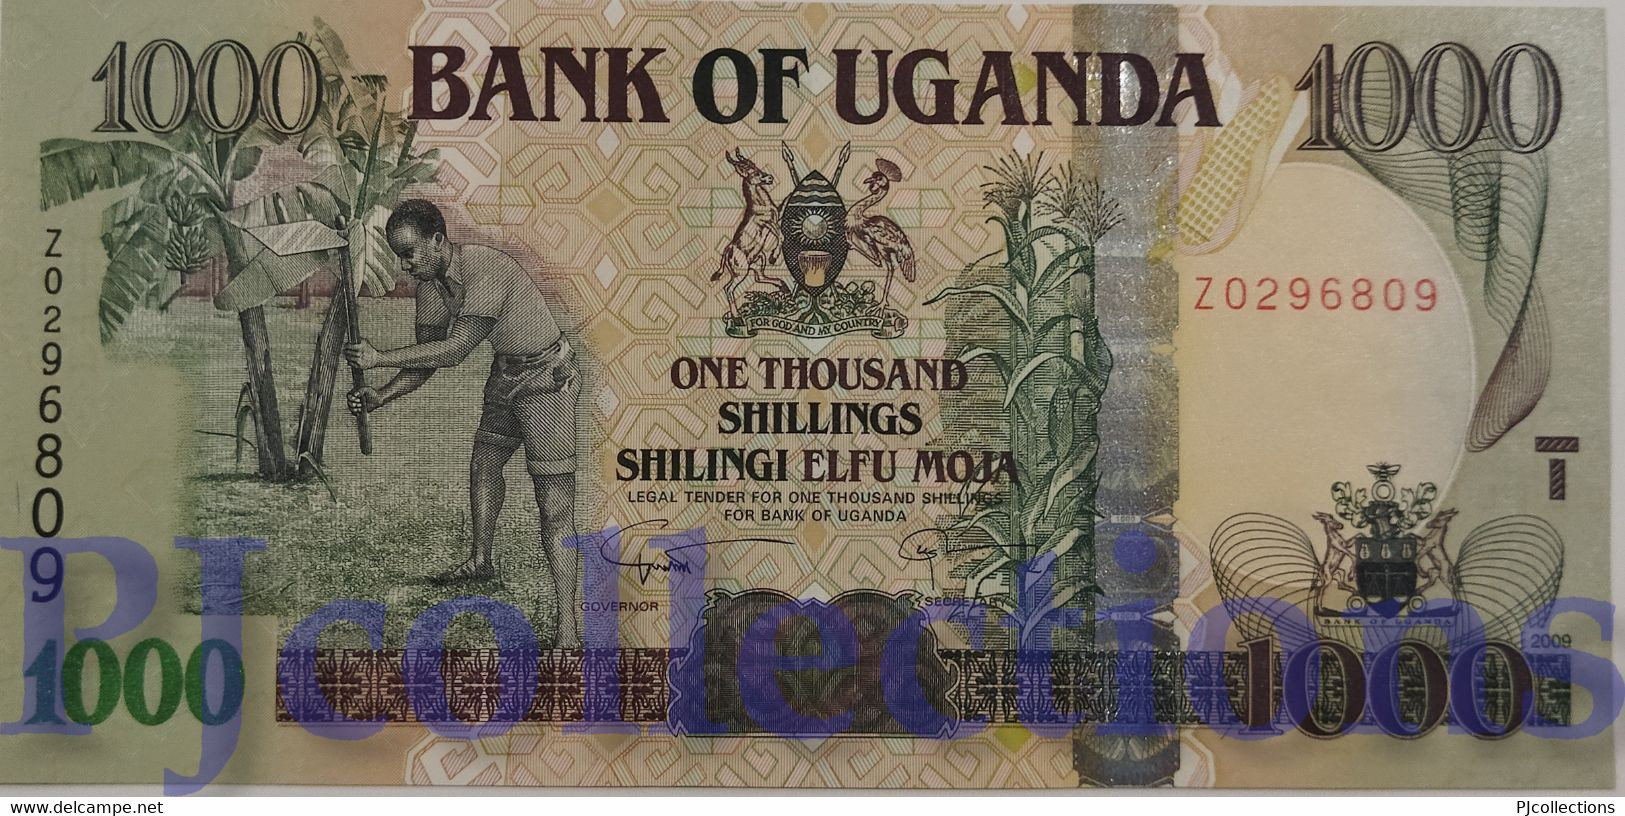 UGANDA 5000 SHILLINGS 2005 PICK 44b UNC - Oeganda